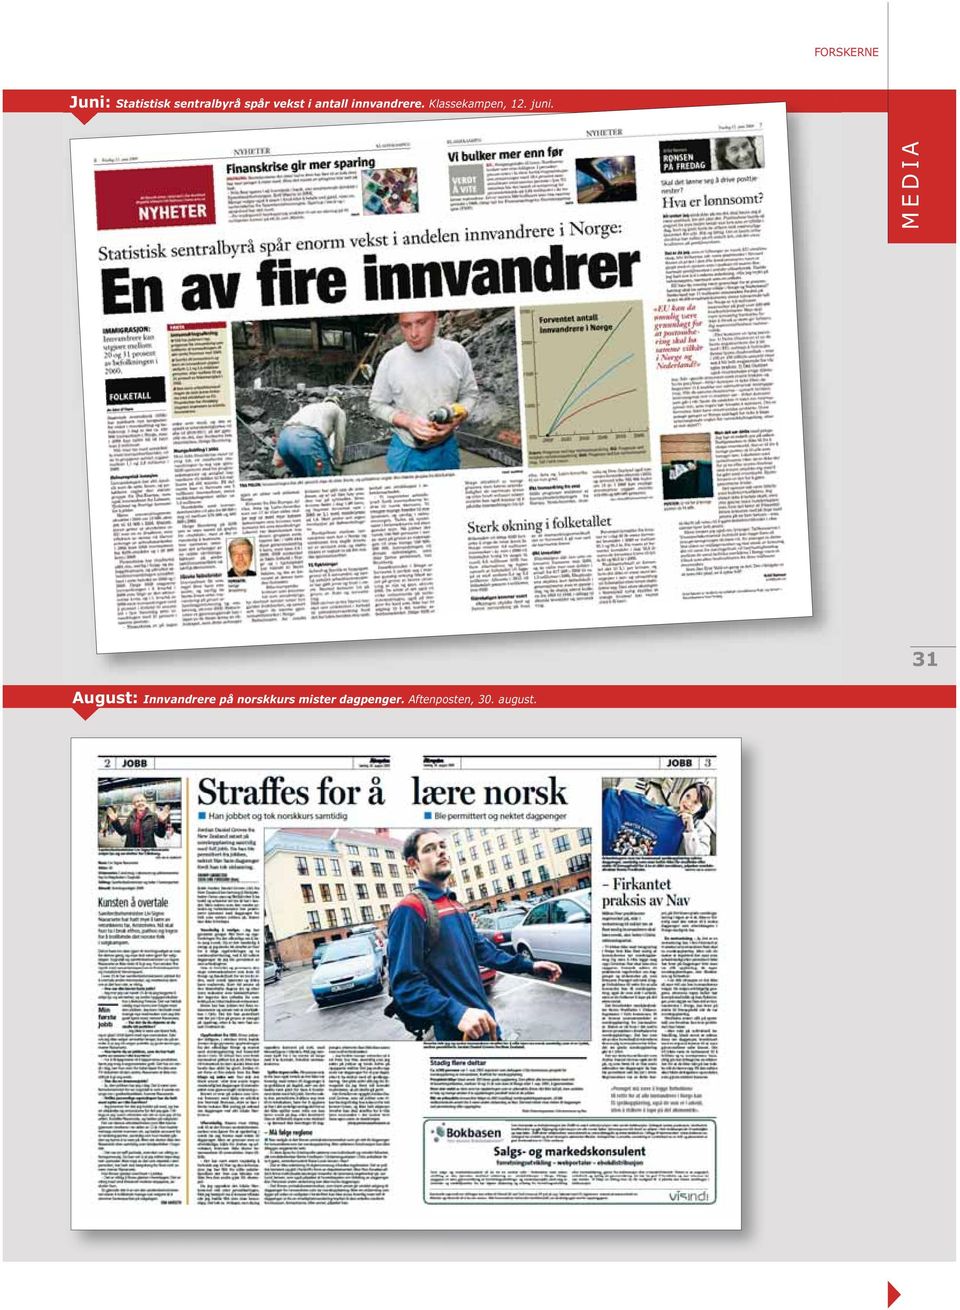 MEDIA 31 August: Innvandrere på norskkurs